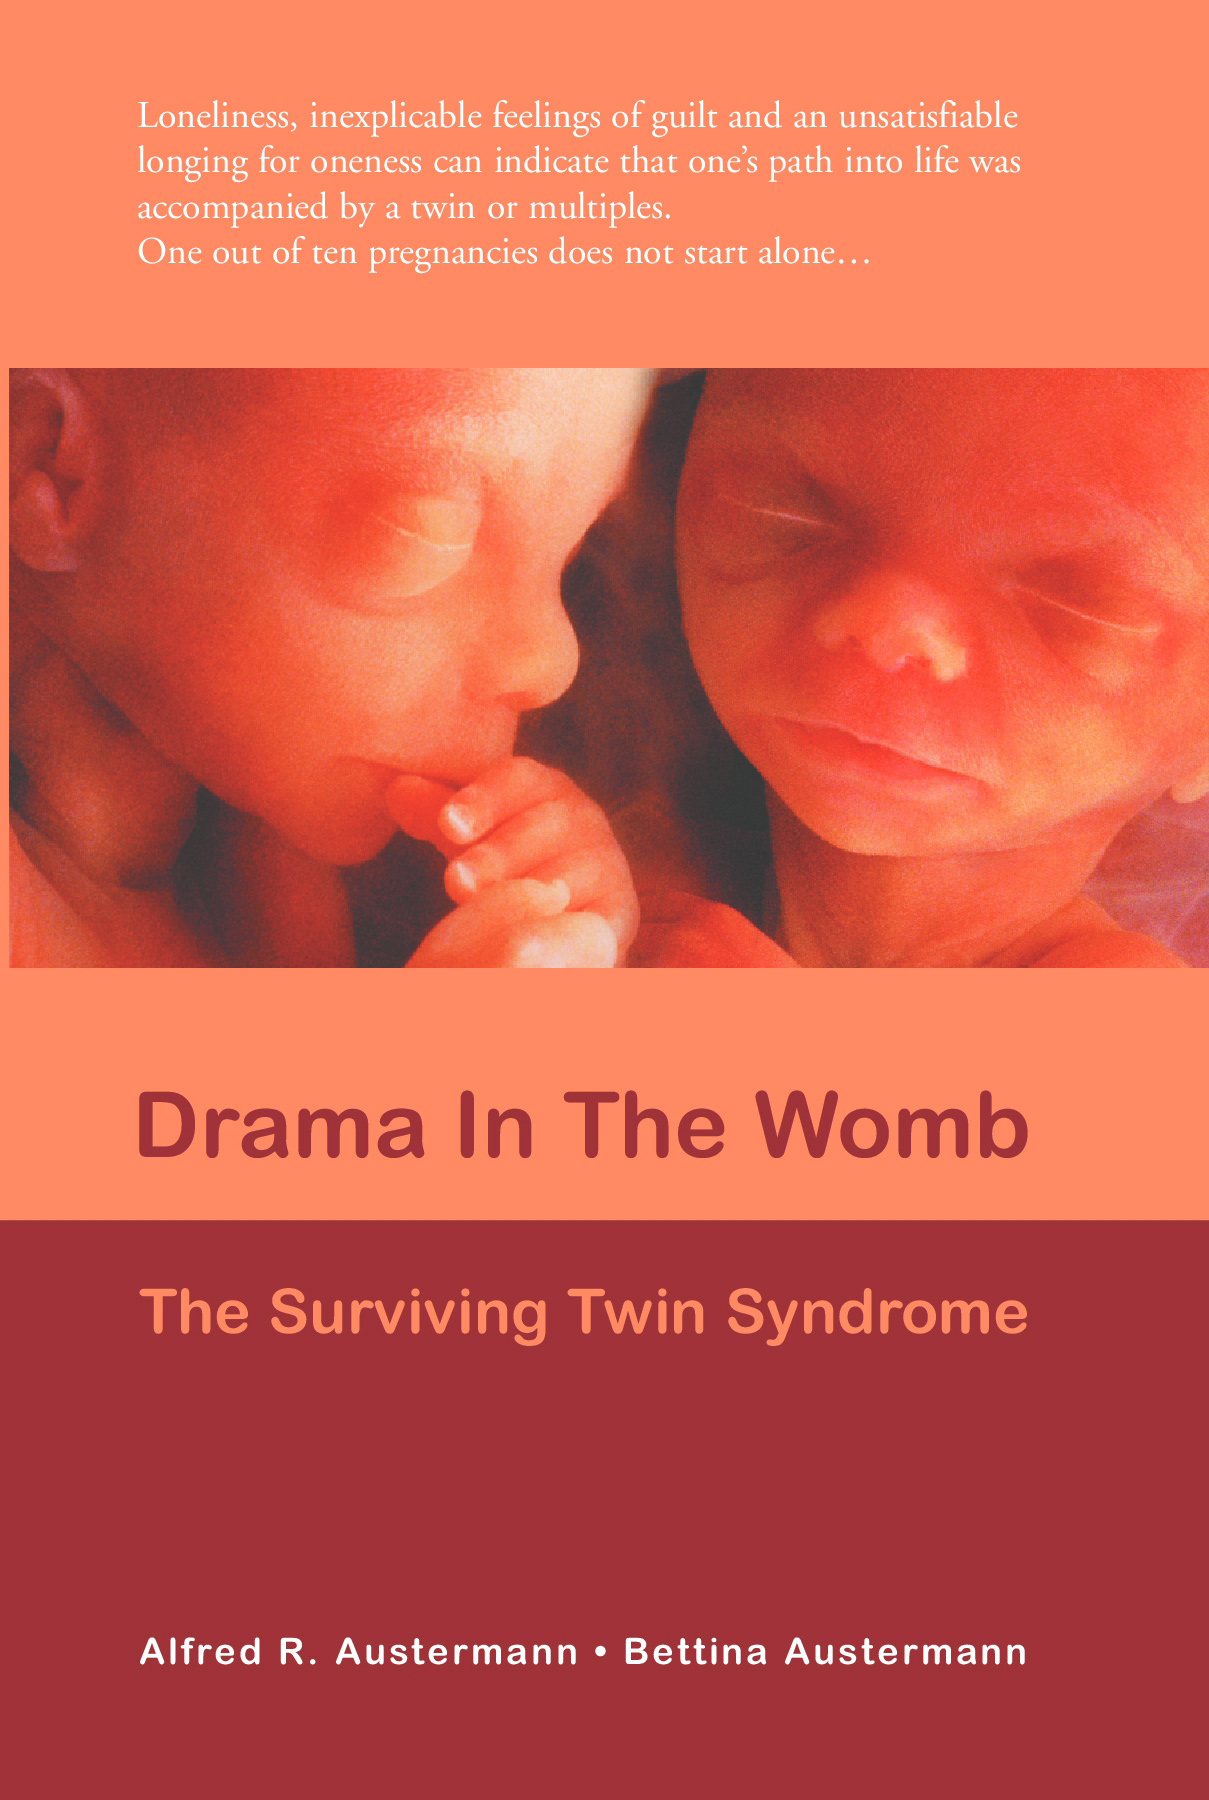 Das Drama im Mutterleib